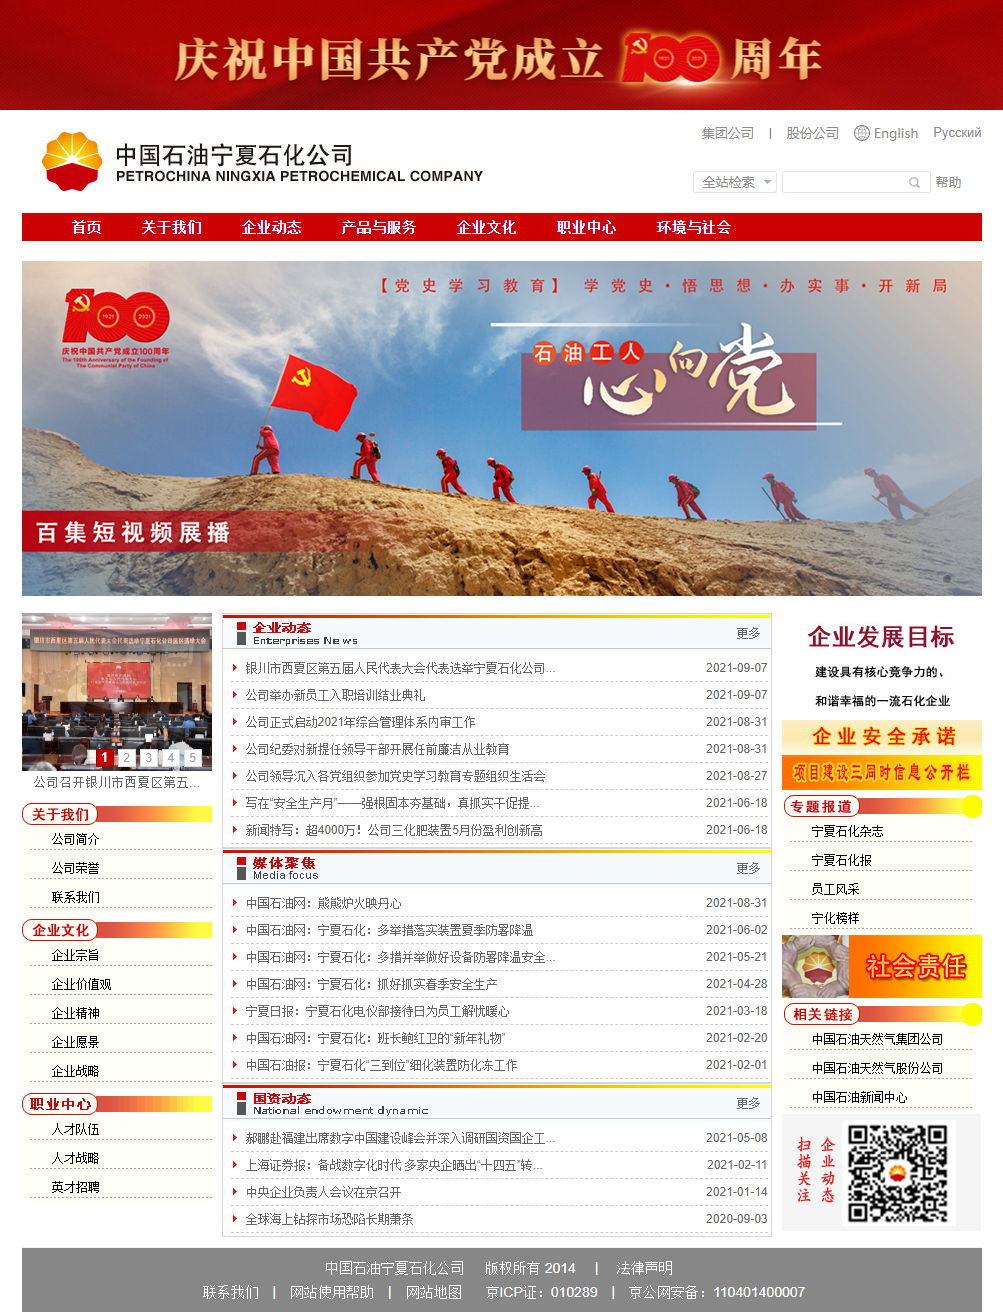 中国石油天然气股份有限公司宁夏石化分公司网站案例